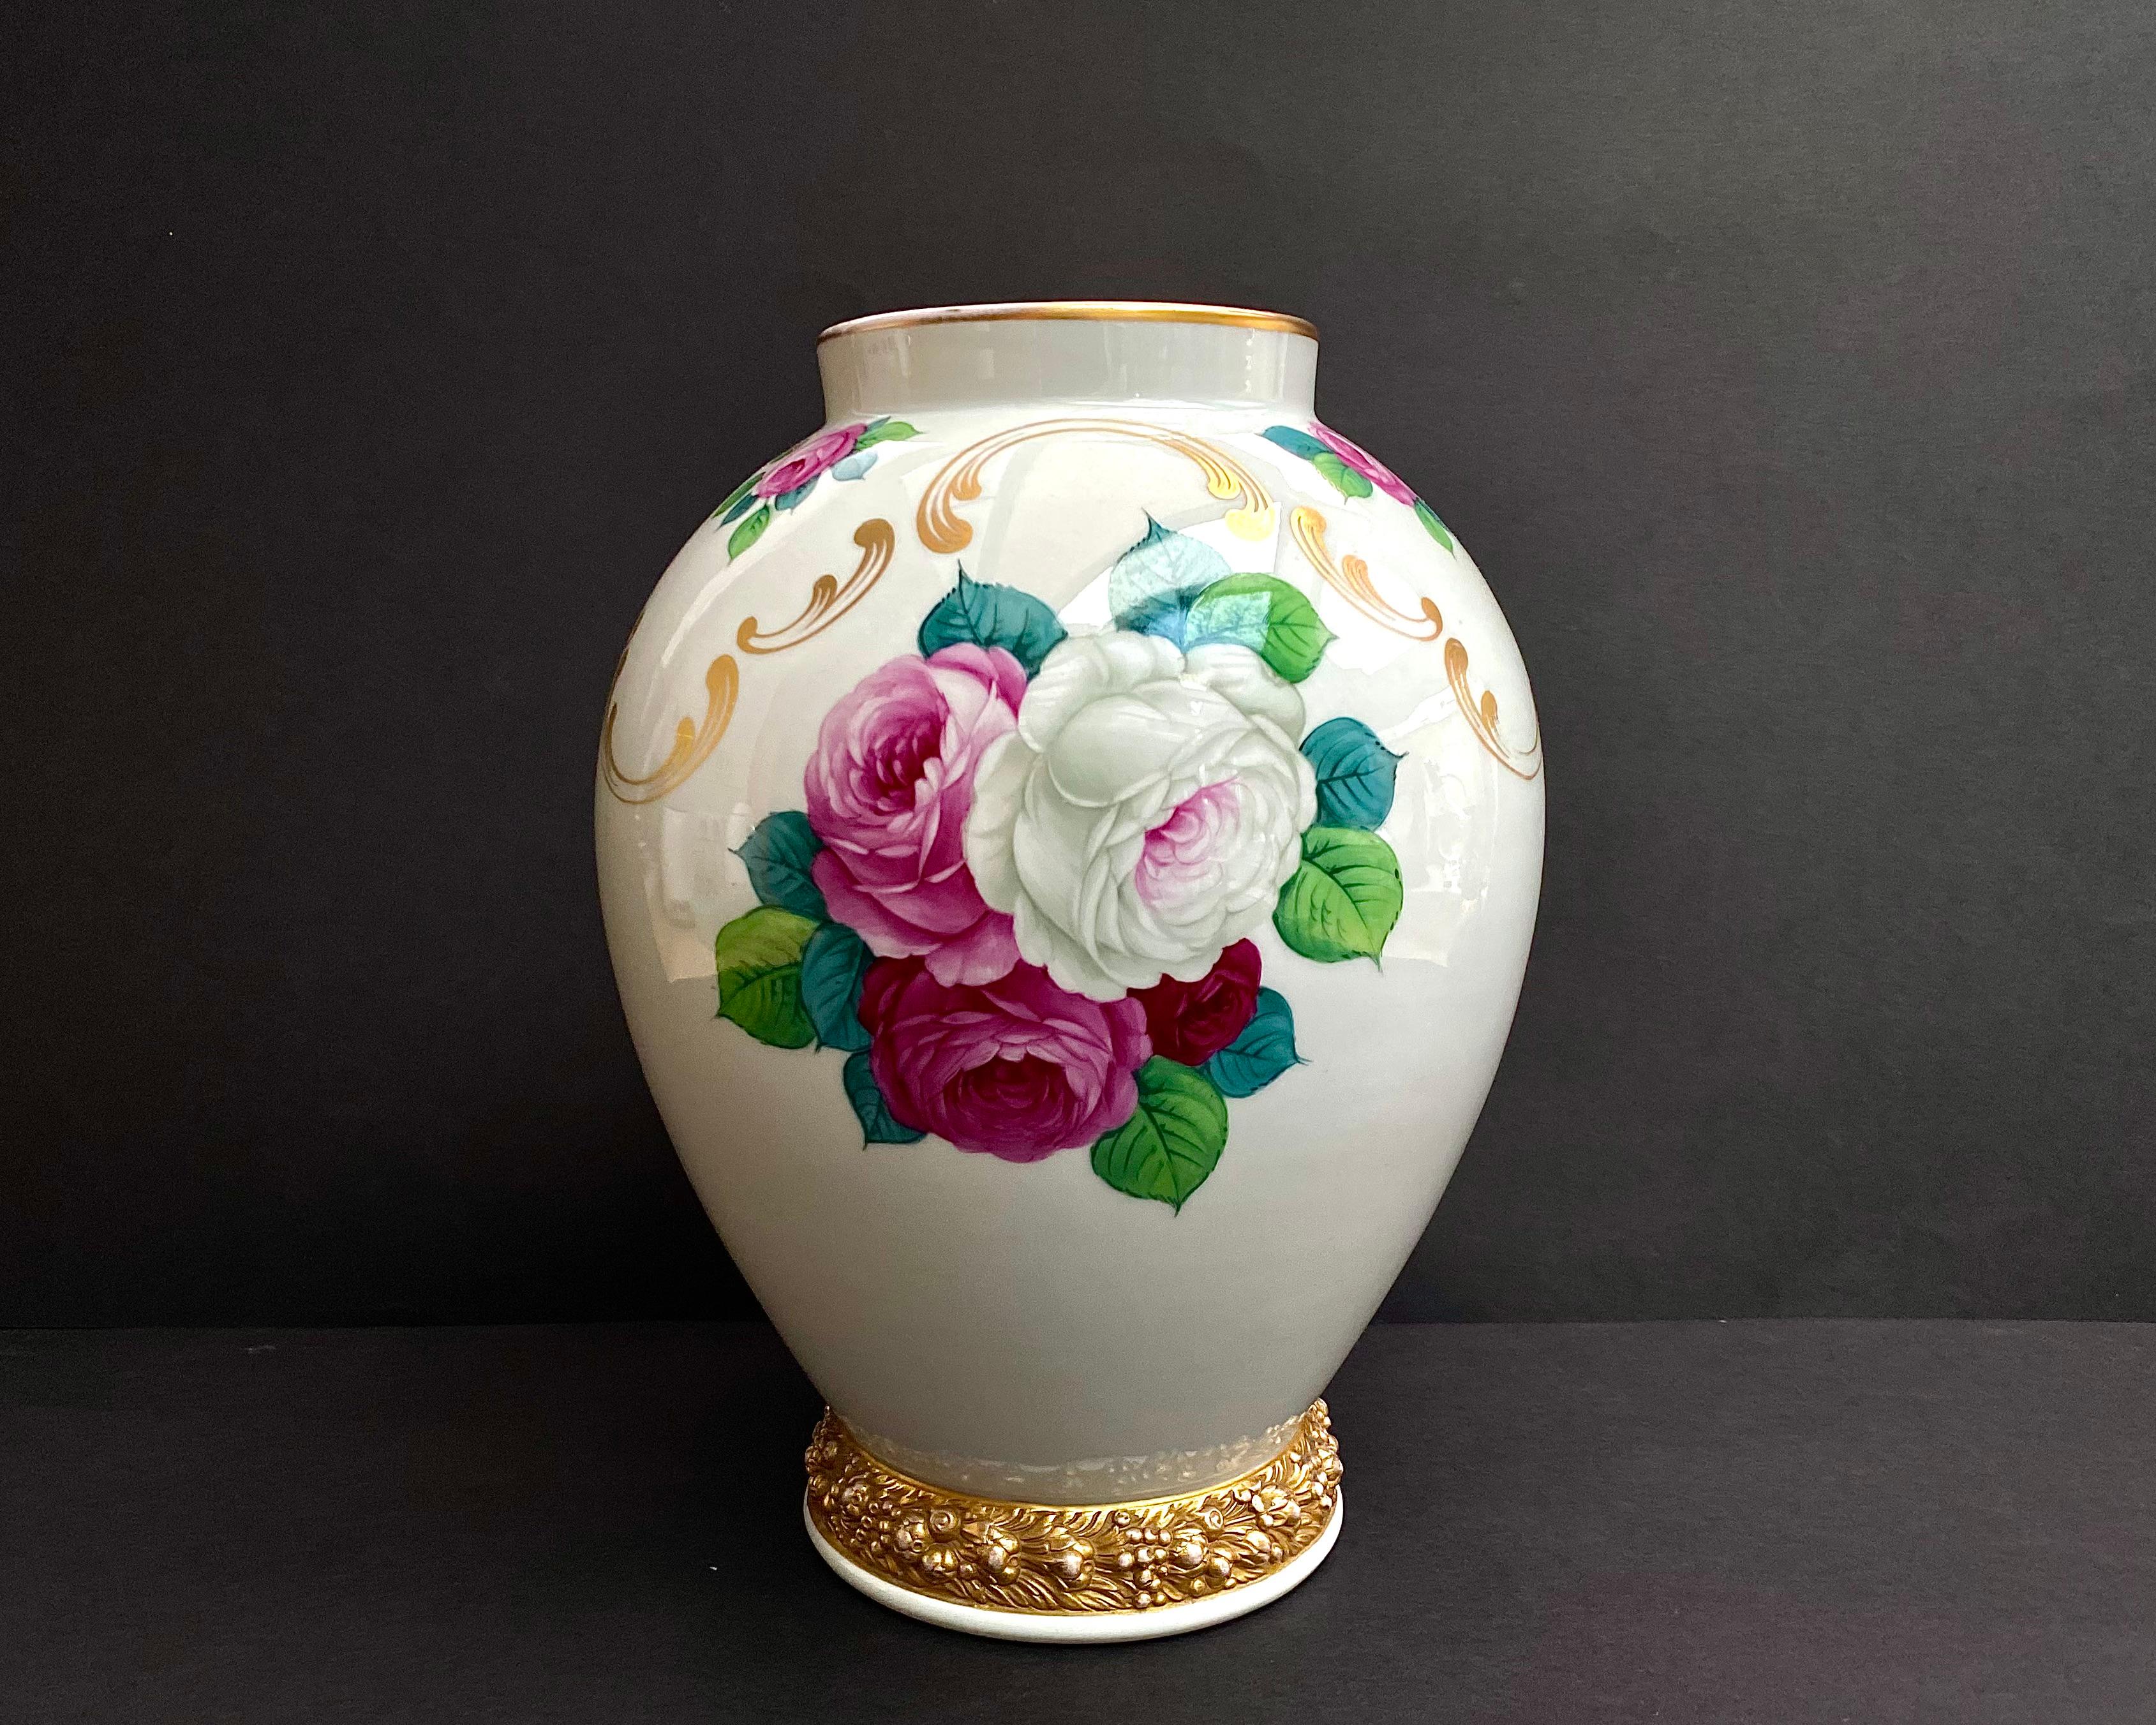 Vase antique Rosenthal peint à la main de roses rouges. Remarquable travail artistique sur les roses de ce grand vase antique de Rosenthal.

Vase floral peint à la main, numéroté et signé.

Avec ce vase, vous pouvez créer du confort et de l'harmonie